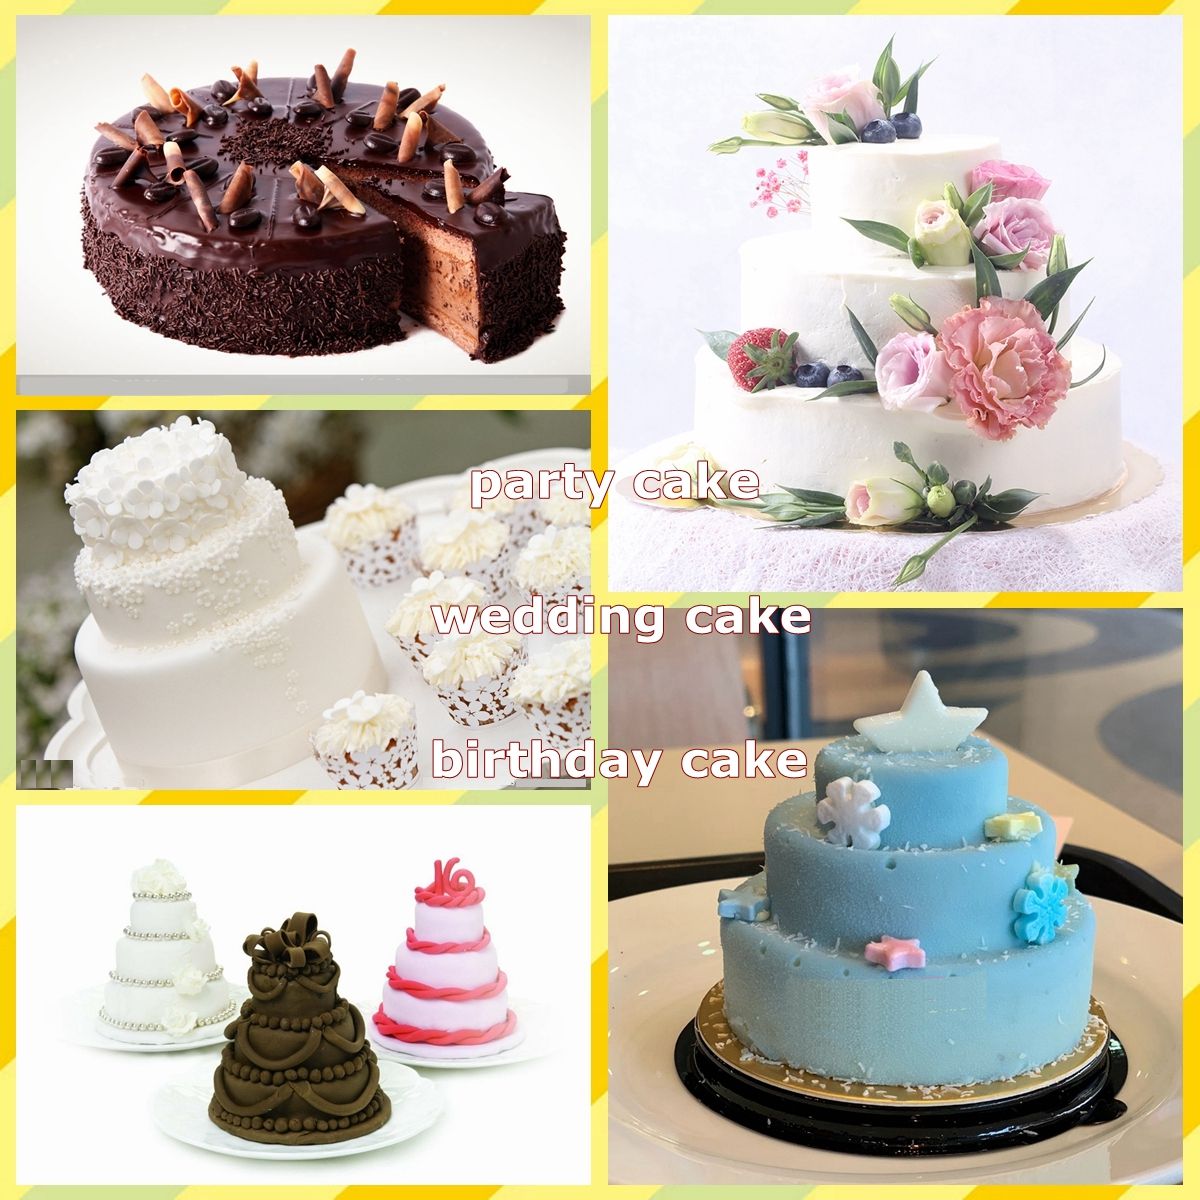 3Pcs-Cake-Molds-Round-Bake-Pan-DIY-Party-Wedding-Birthday-Cupcake-Mould-Baking-Tool-1602691